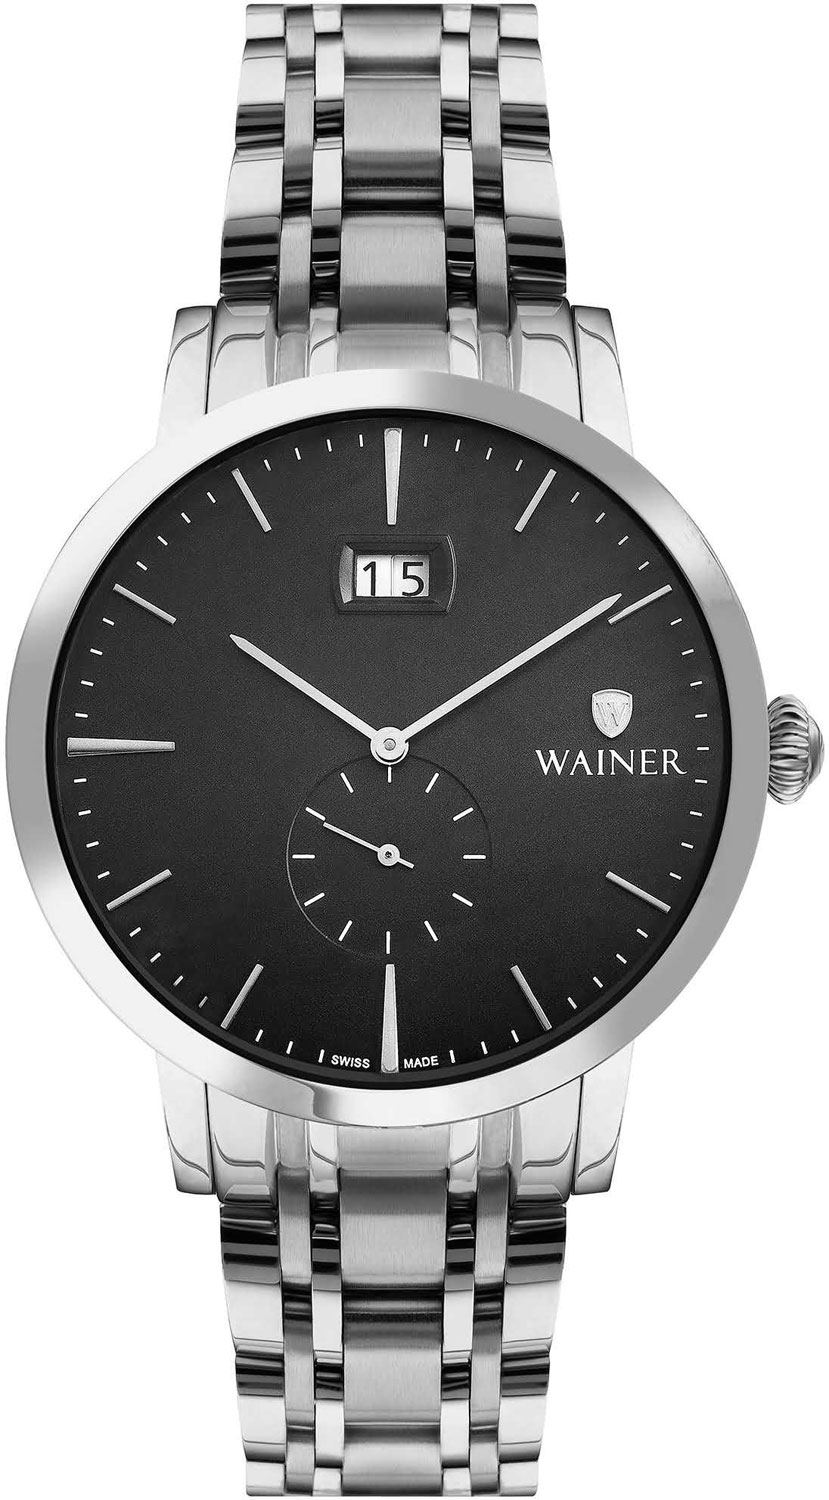 Фото - Мужские часы Wainer WA.01881-A мужские часы wainer wa 25920 a